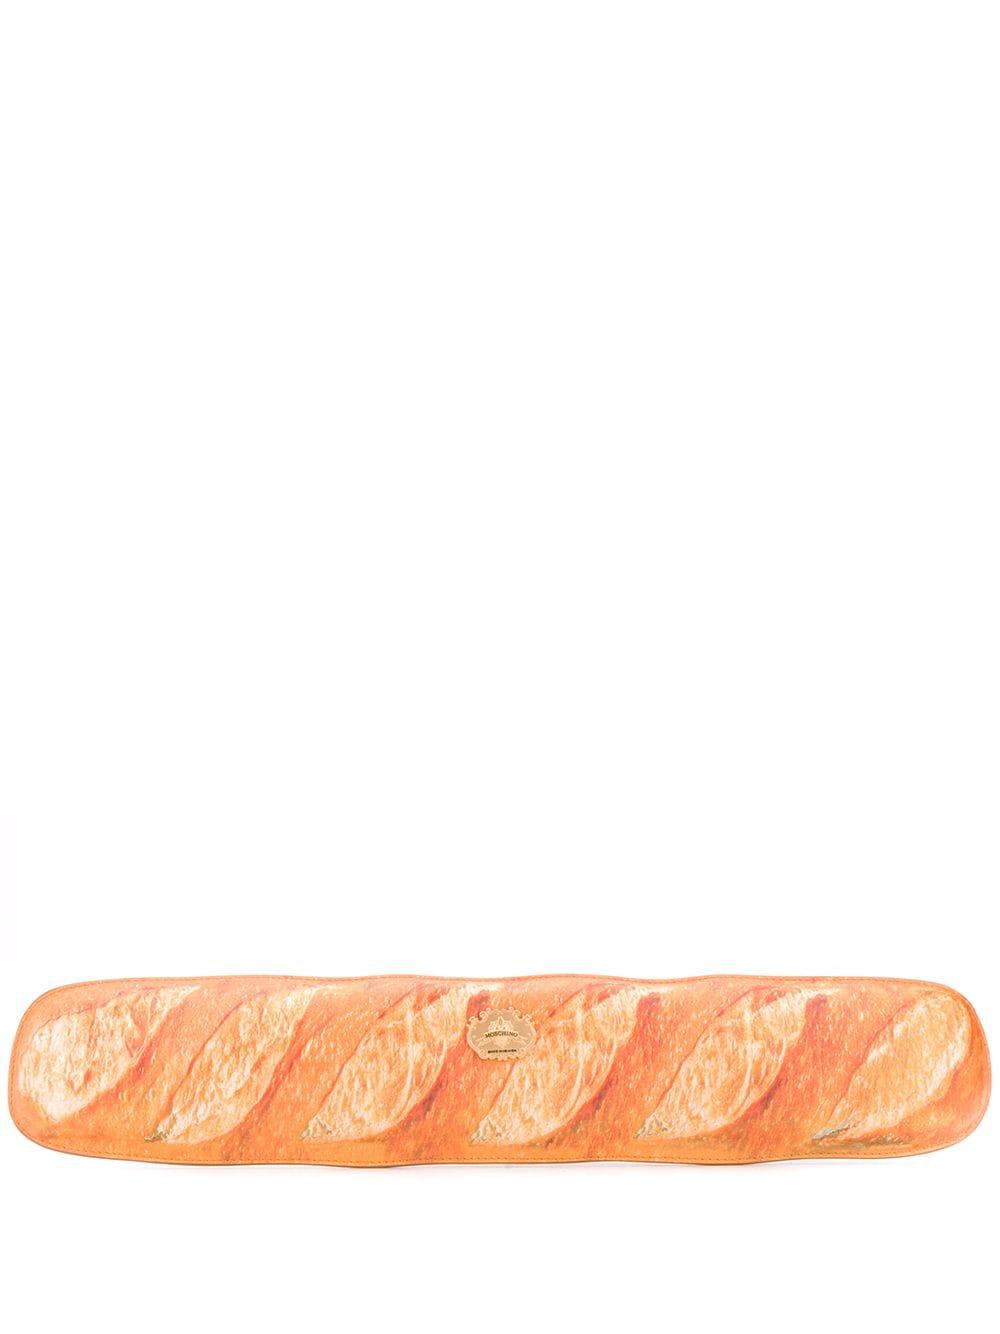 Moschino Baguette Clutch in Orange | Lyst